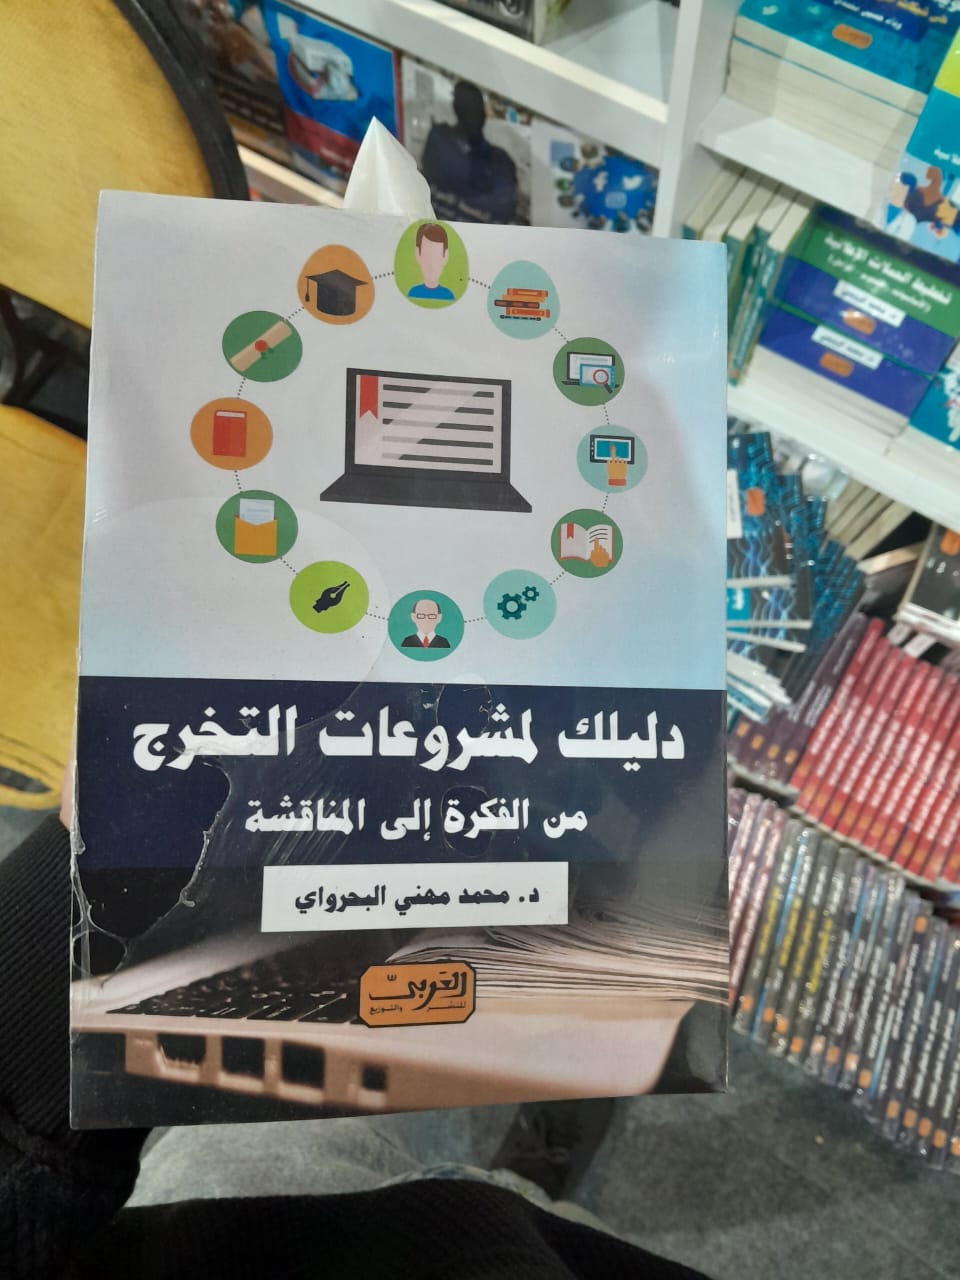 دليلك لمشروعات التخرج كتاب جديد لمحمد البحراوي (1)